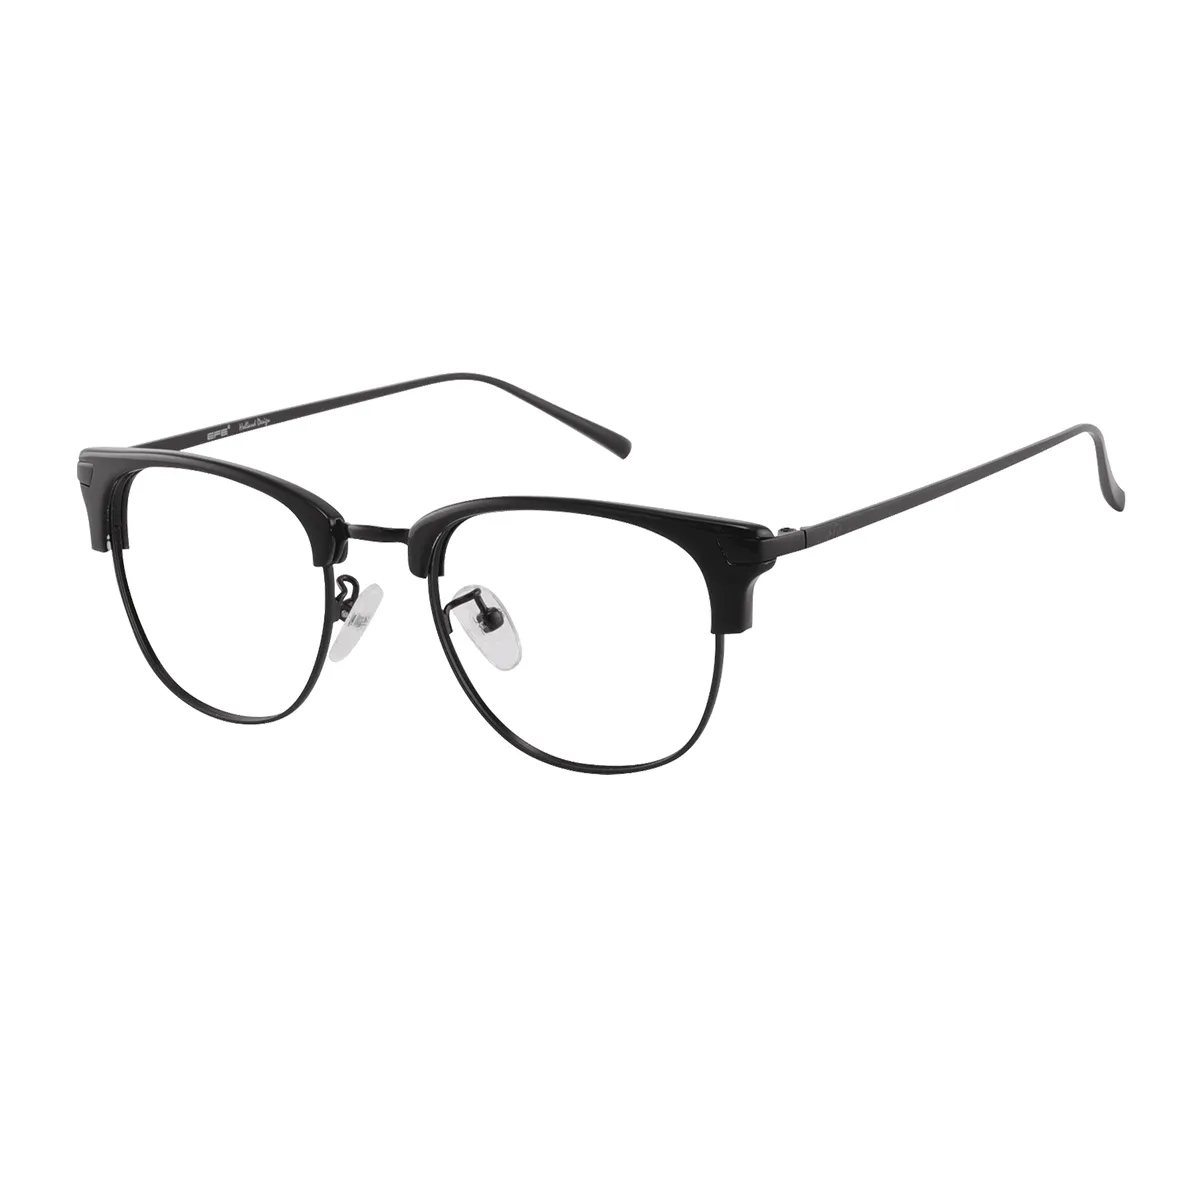 Hewitt - Browline Black Glasses for Men & Women